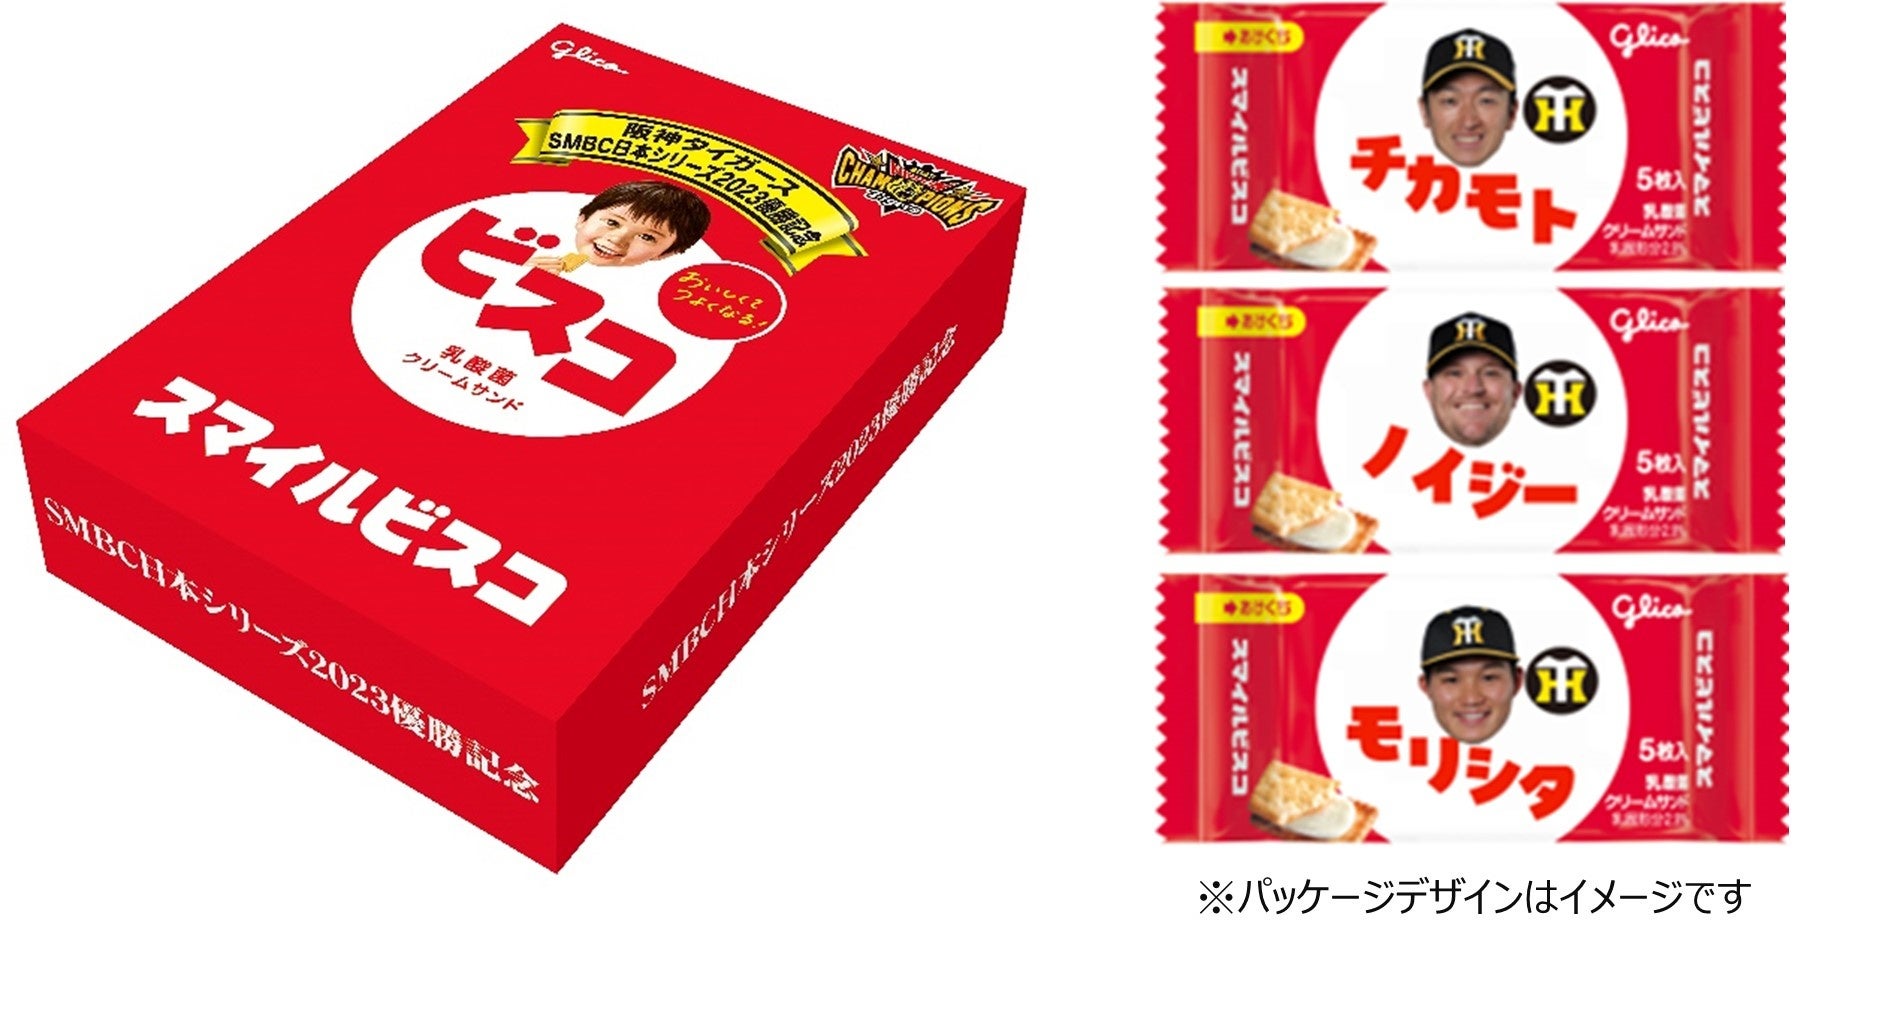 阪神タイガース日本一記念スマイルビスコ」 5,000セット限定で発売 